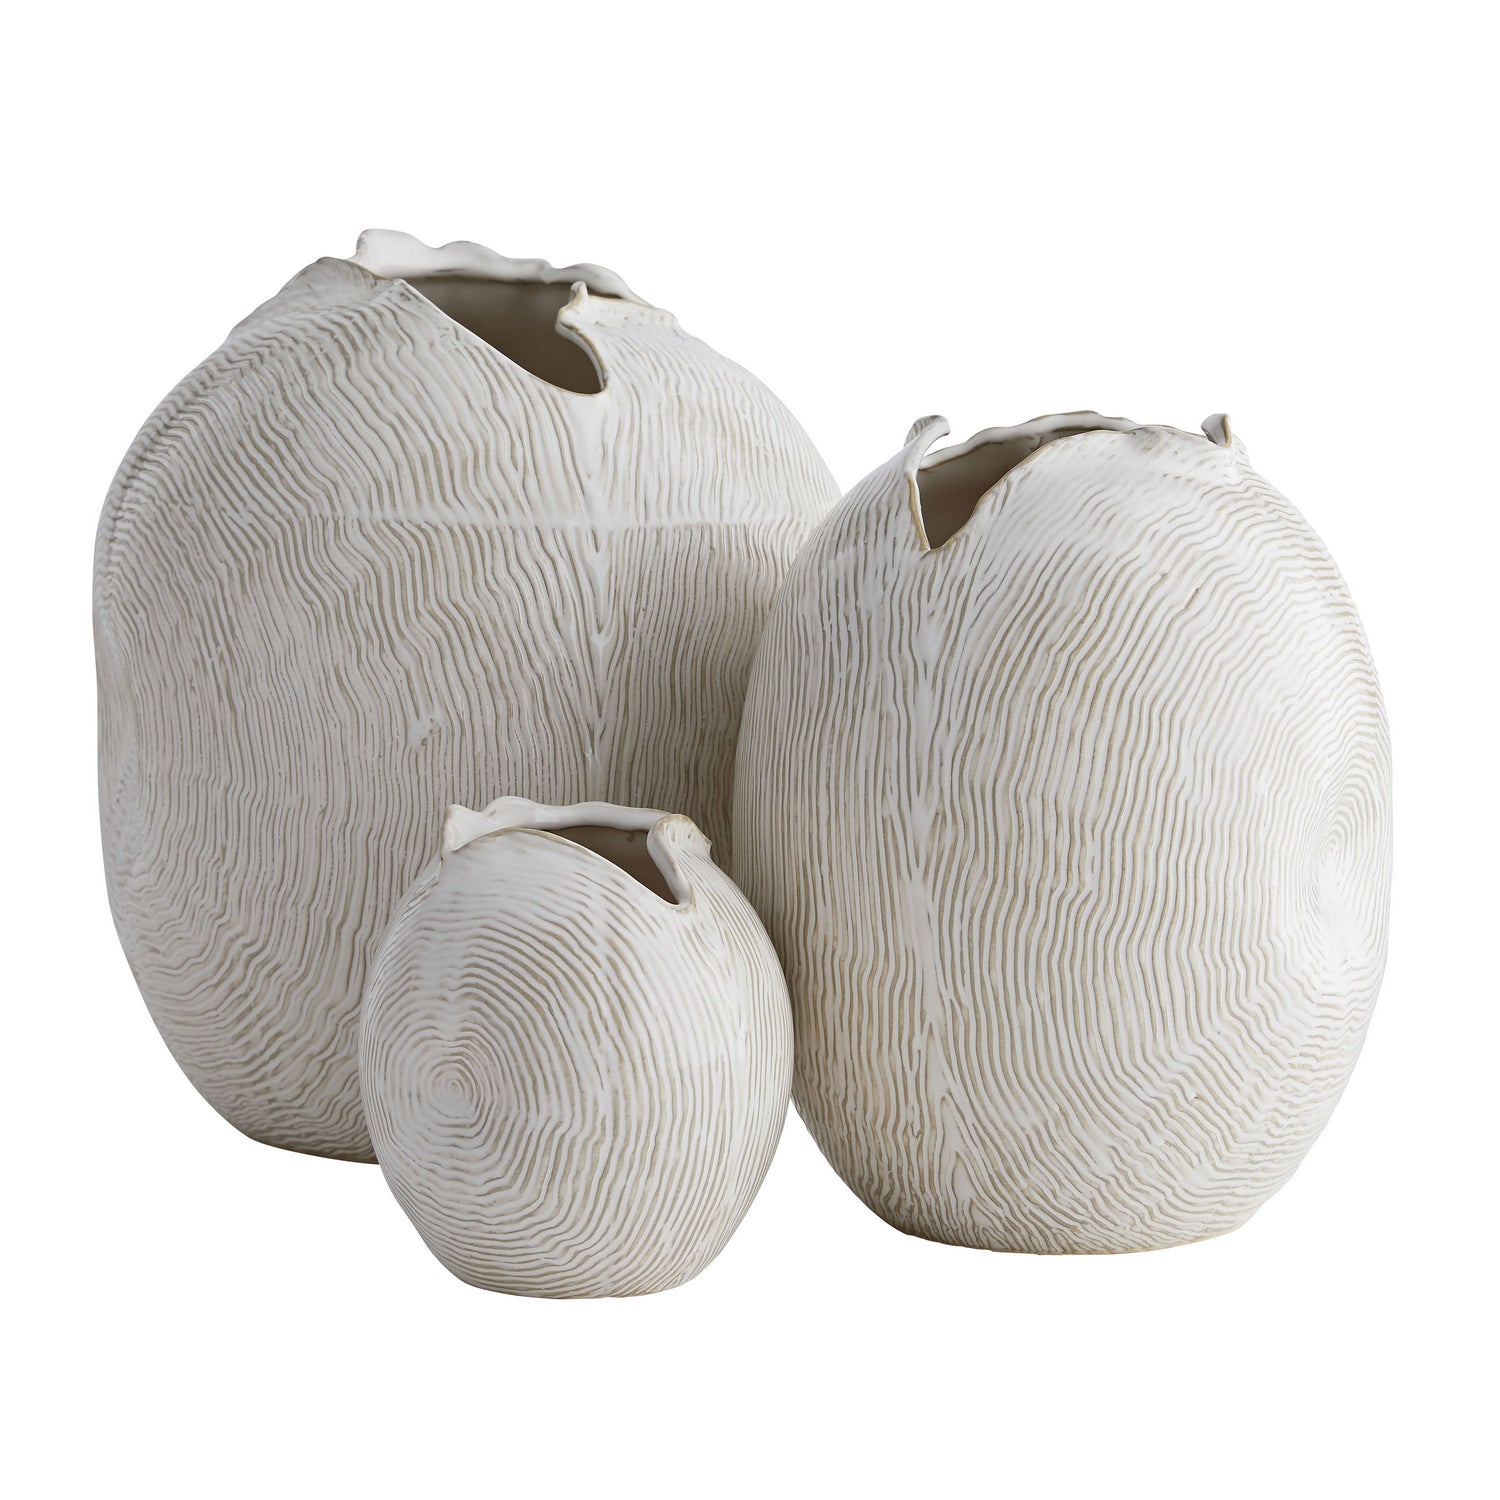 Arteriors - 7712 - Vases Set of 3 - Blume - White Wash